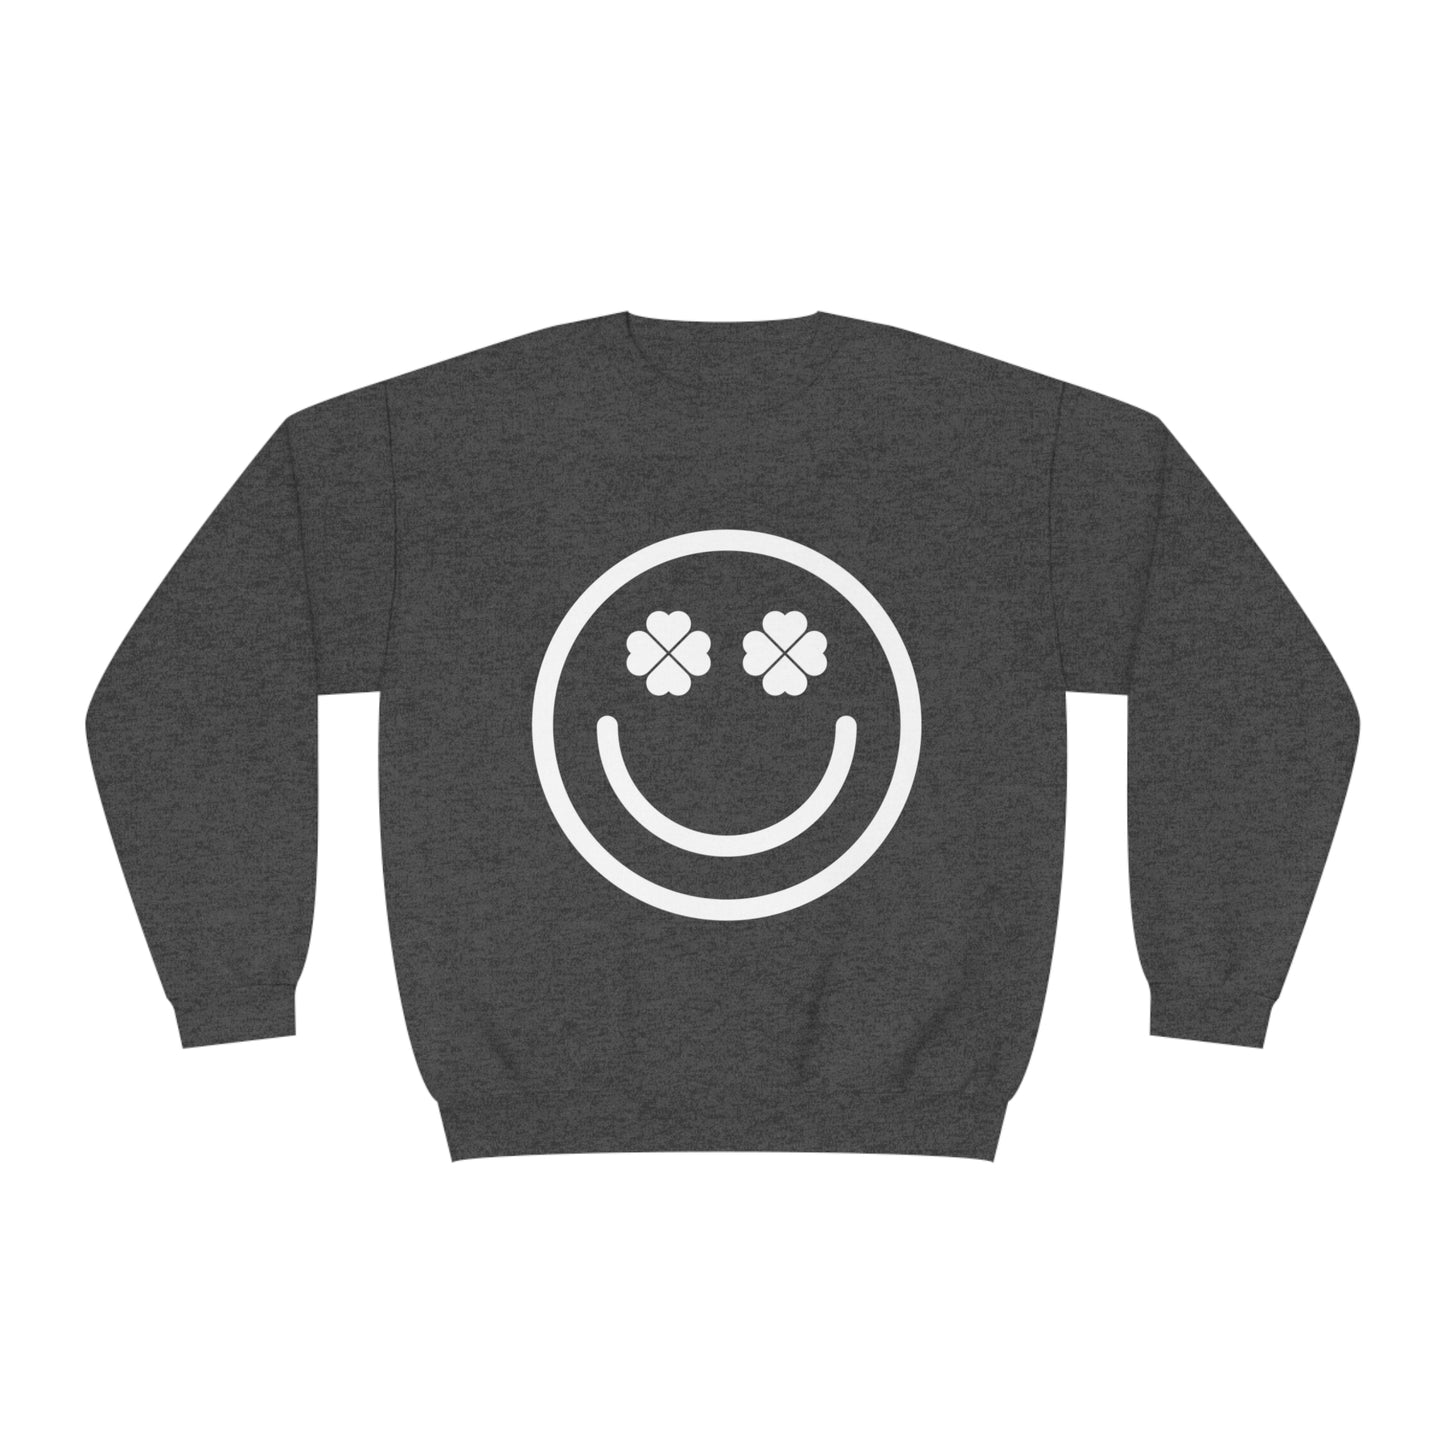 Smiley Shamrock Sweatshirt